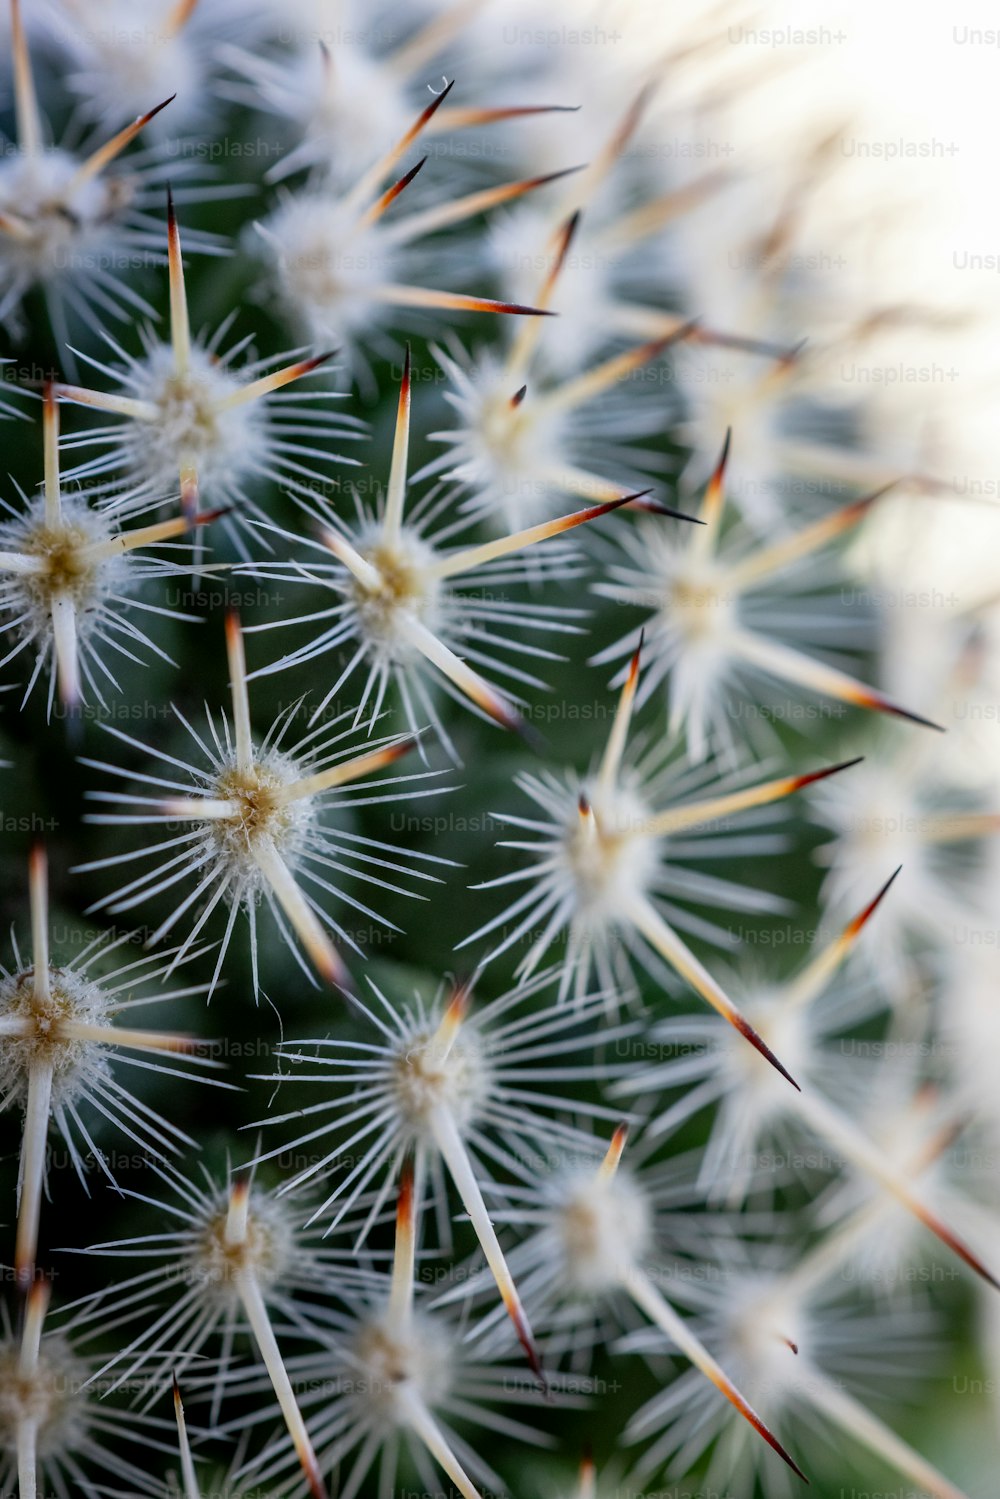 Un primo piano di una pianta di cactus con molte punte